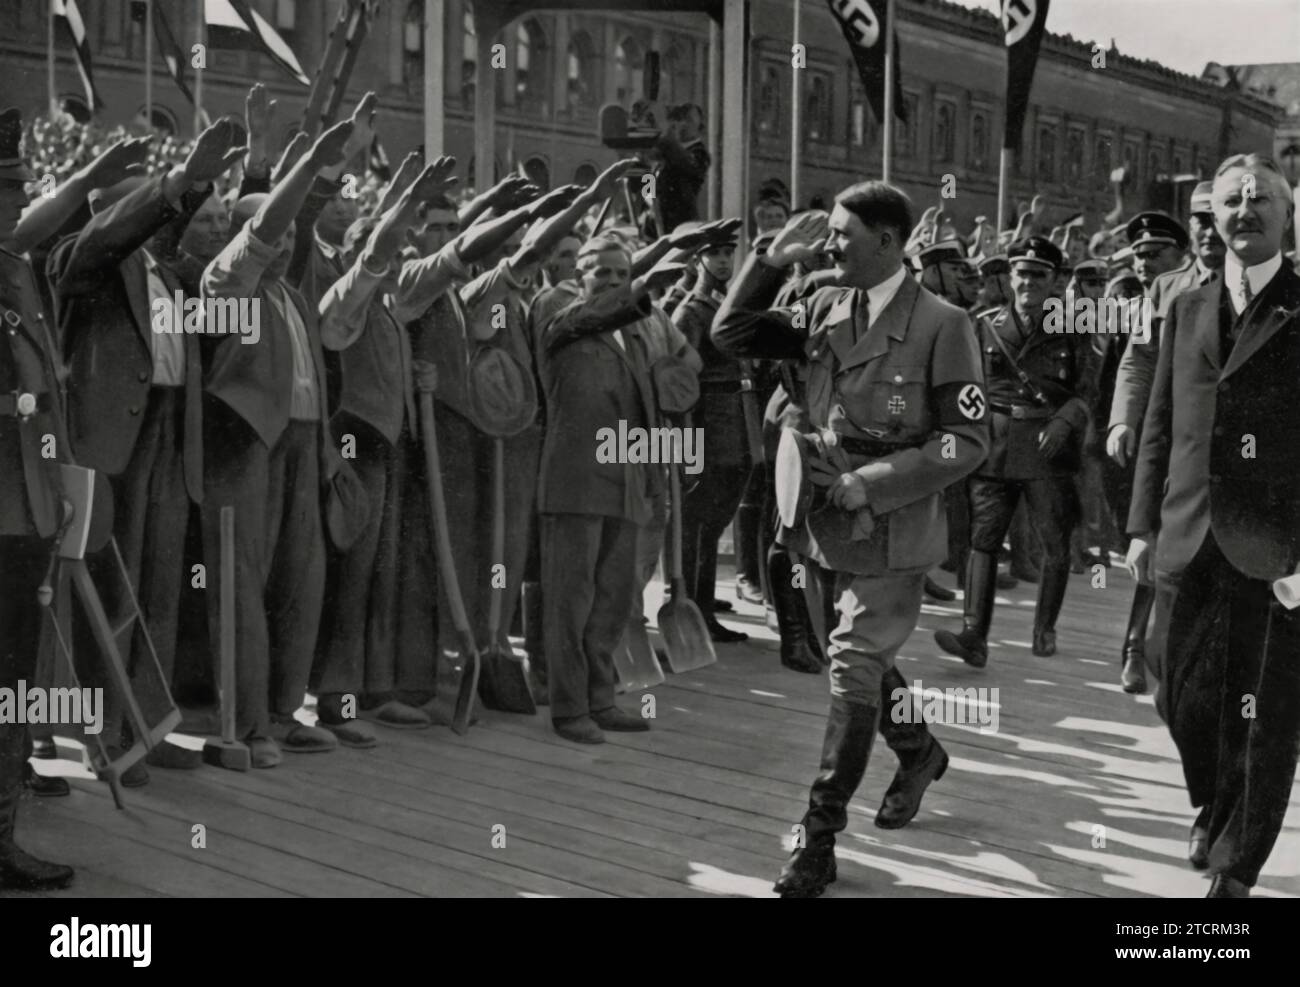 Le 5 mai 1934, Adolf Hitler assiste à la pose de la première pierre du nouveau bâtiment de la Reichsbank, un événement important dans le développement économique de l'Allemagne nazie. Cette cérémonie symbolise l'accent mis par le régime sur le contrôle financier et la grandeur architecturale, reflétant ses ambitions plus larges de remodeler le paysage économique de l'Allemagne. Banque D'Images